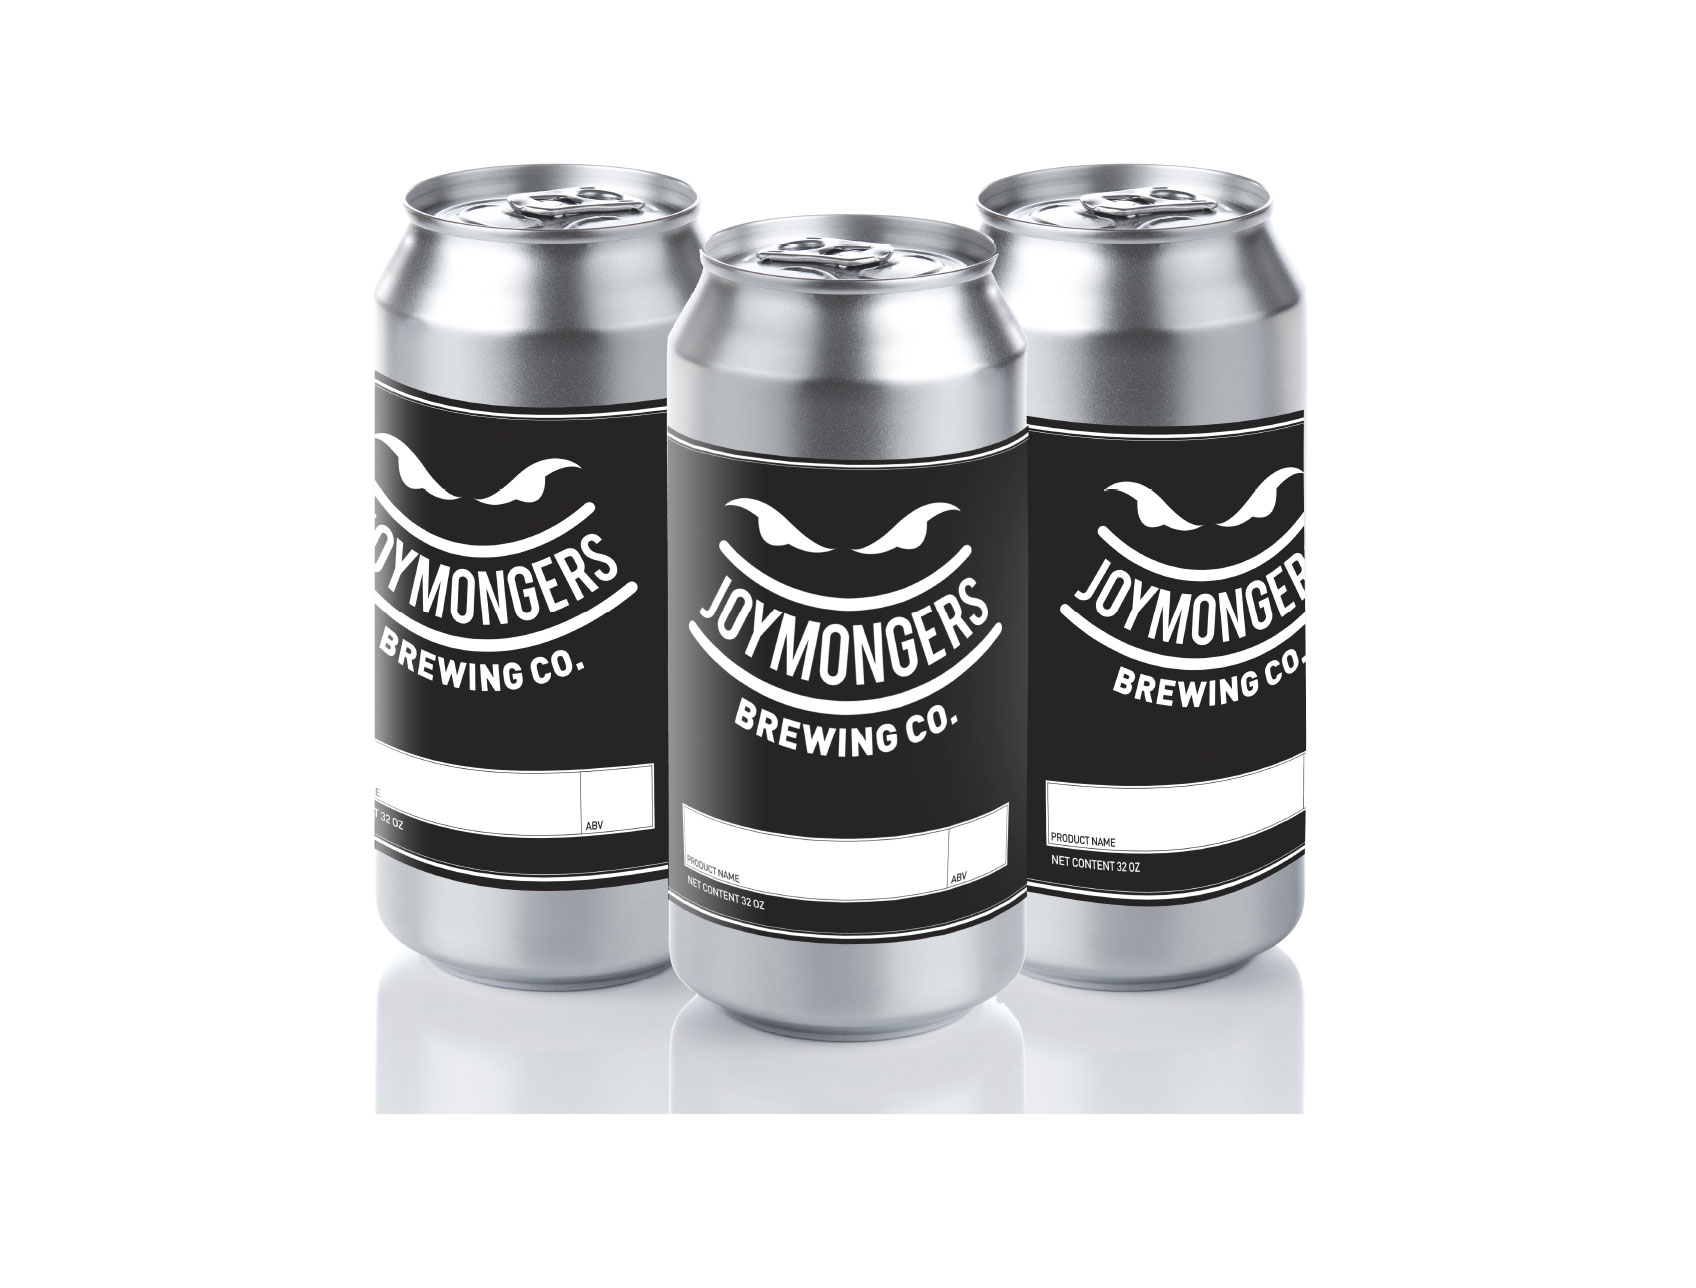 Joymongers Brewery Package Design